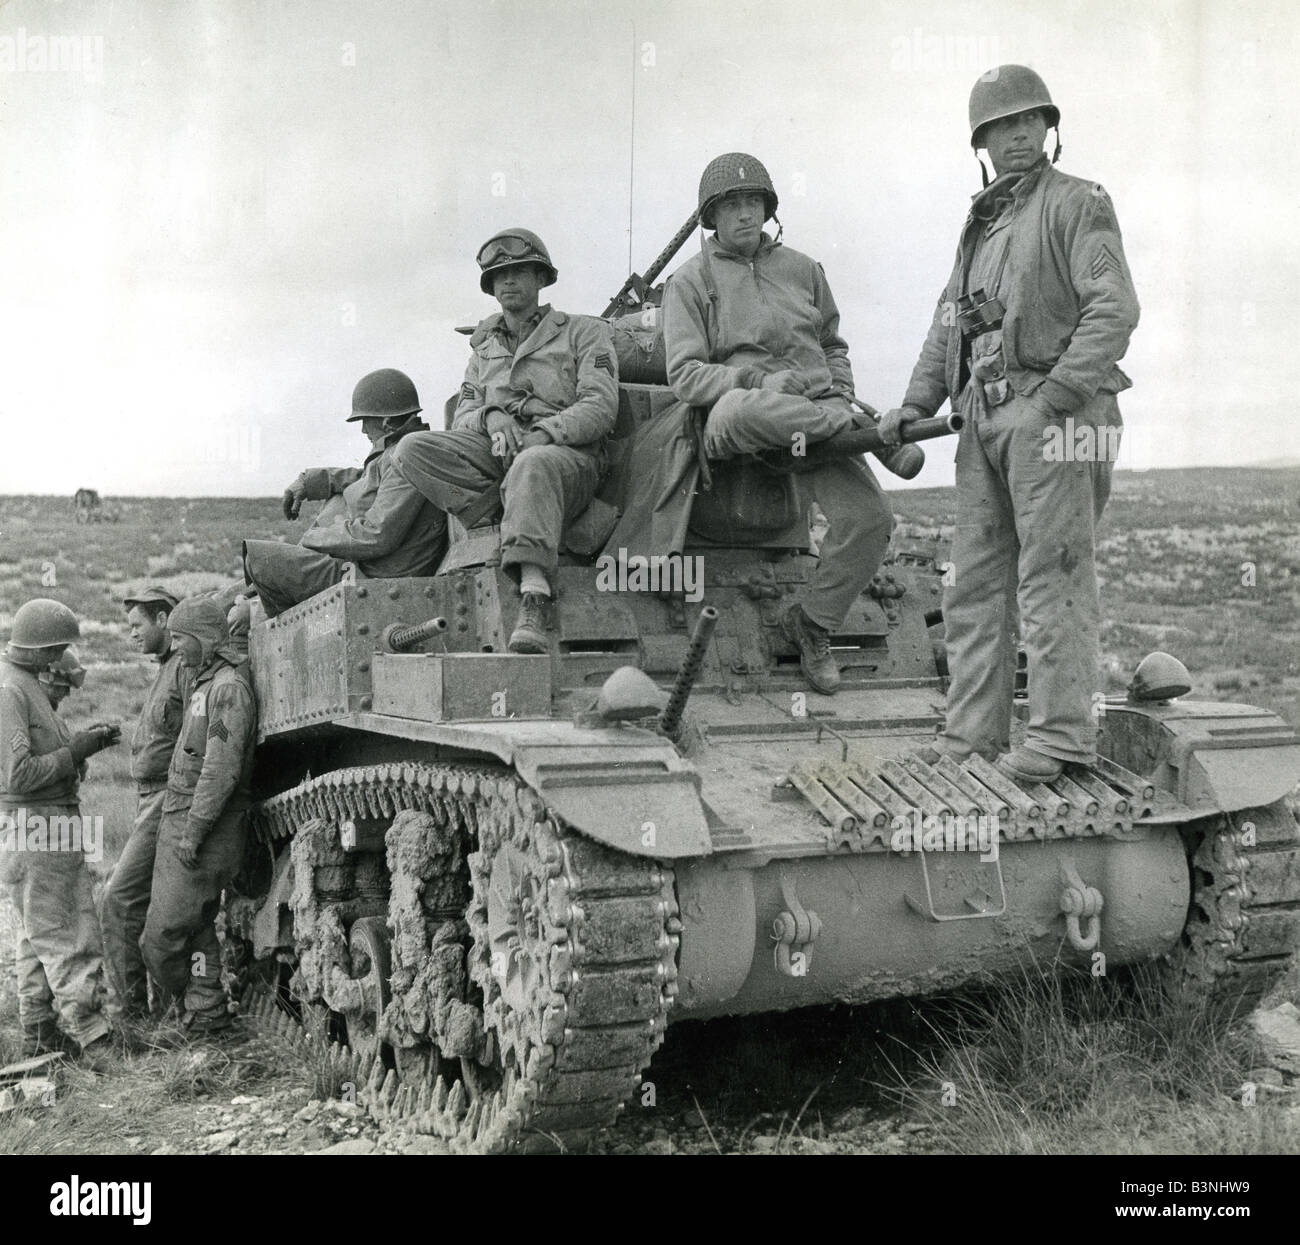 TUNESIEN - US-Panzerbesatzung in Tunesien 1943 vor der Invasion Siziliens. Stockfoto